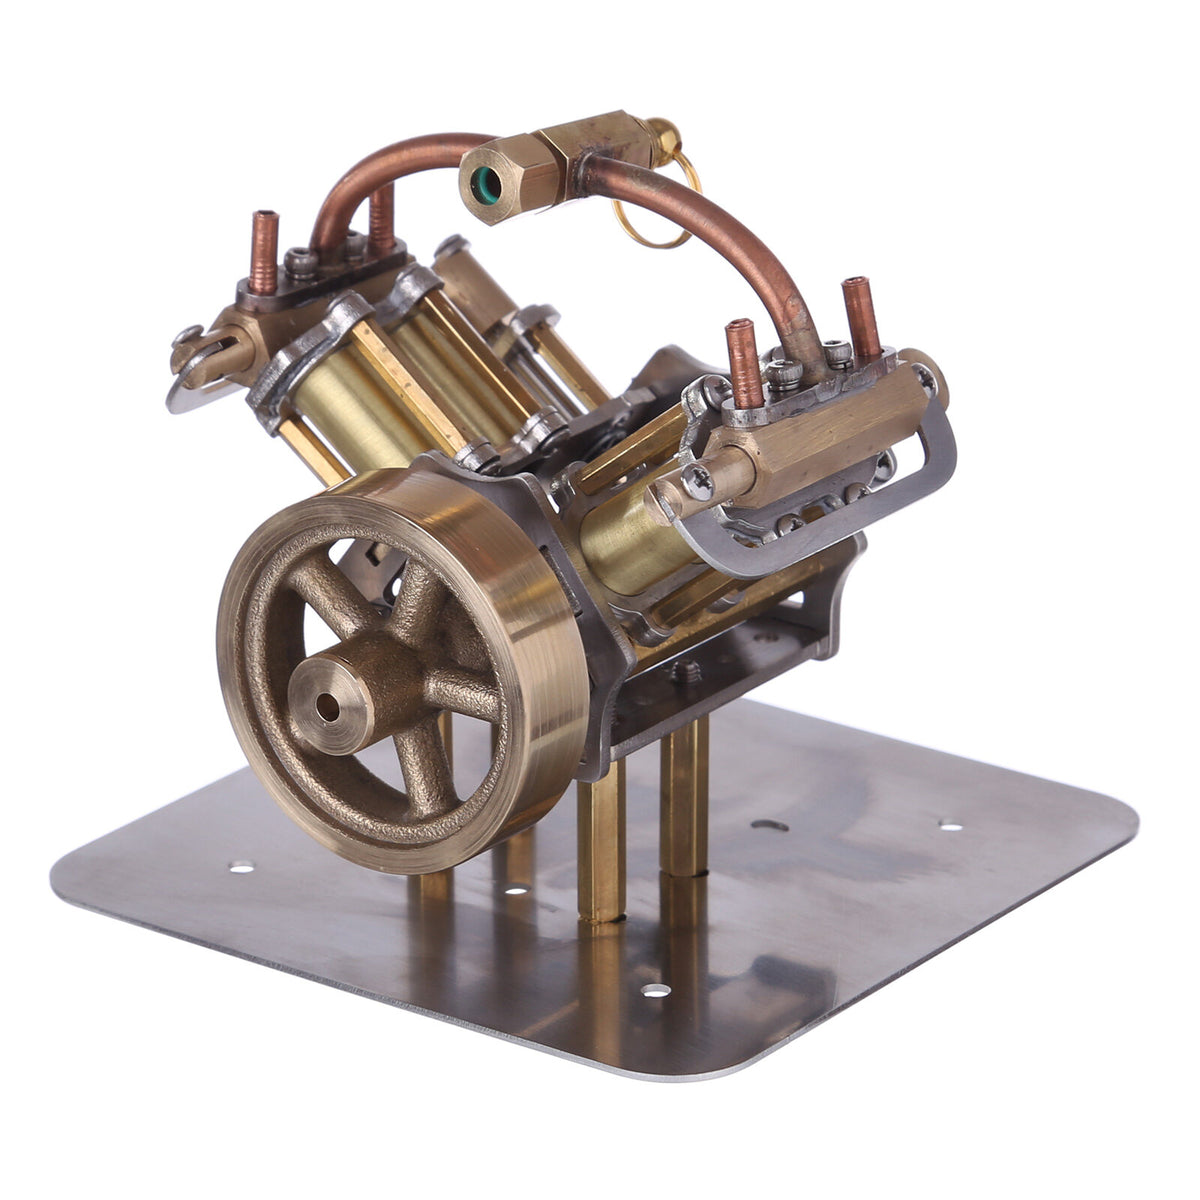 Miniatur-Dampfmaschine V4, Modell einer Miniatur-Dampfmaschine 1